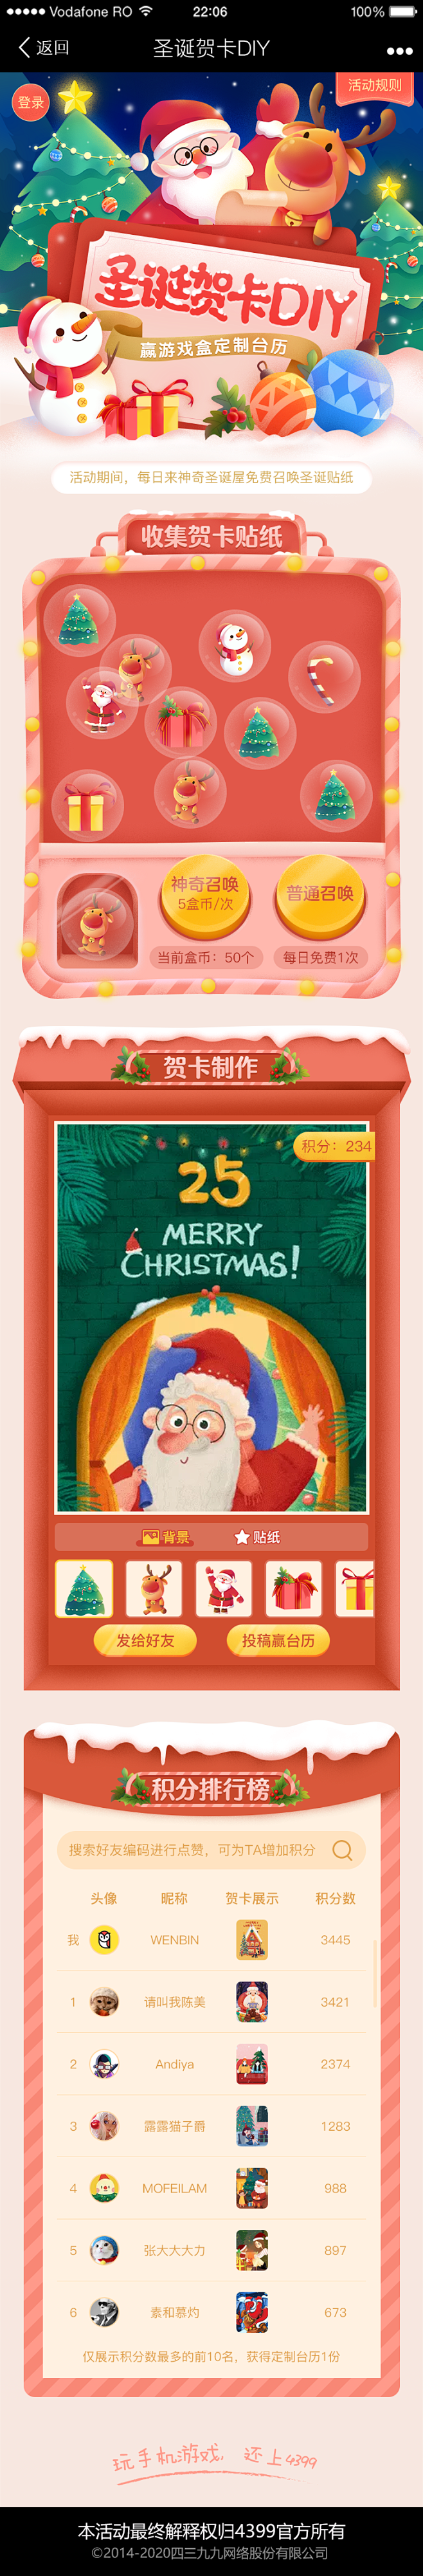 4399游戏盒-活动wap圣诞贺卡DIY...